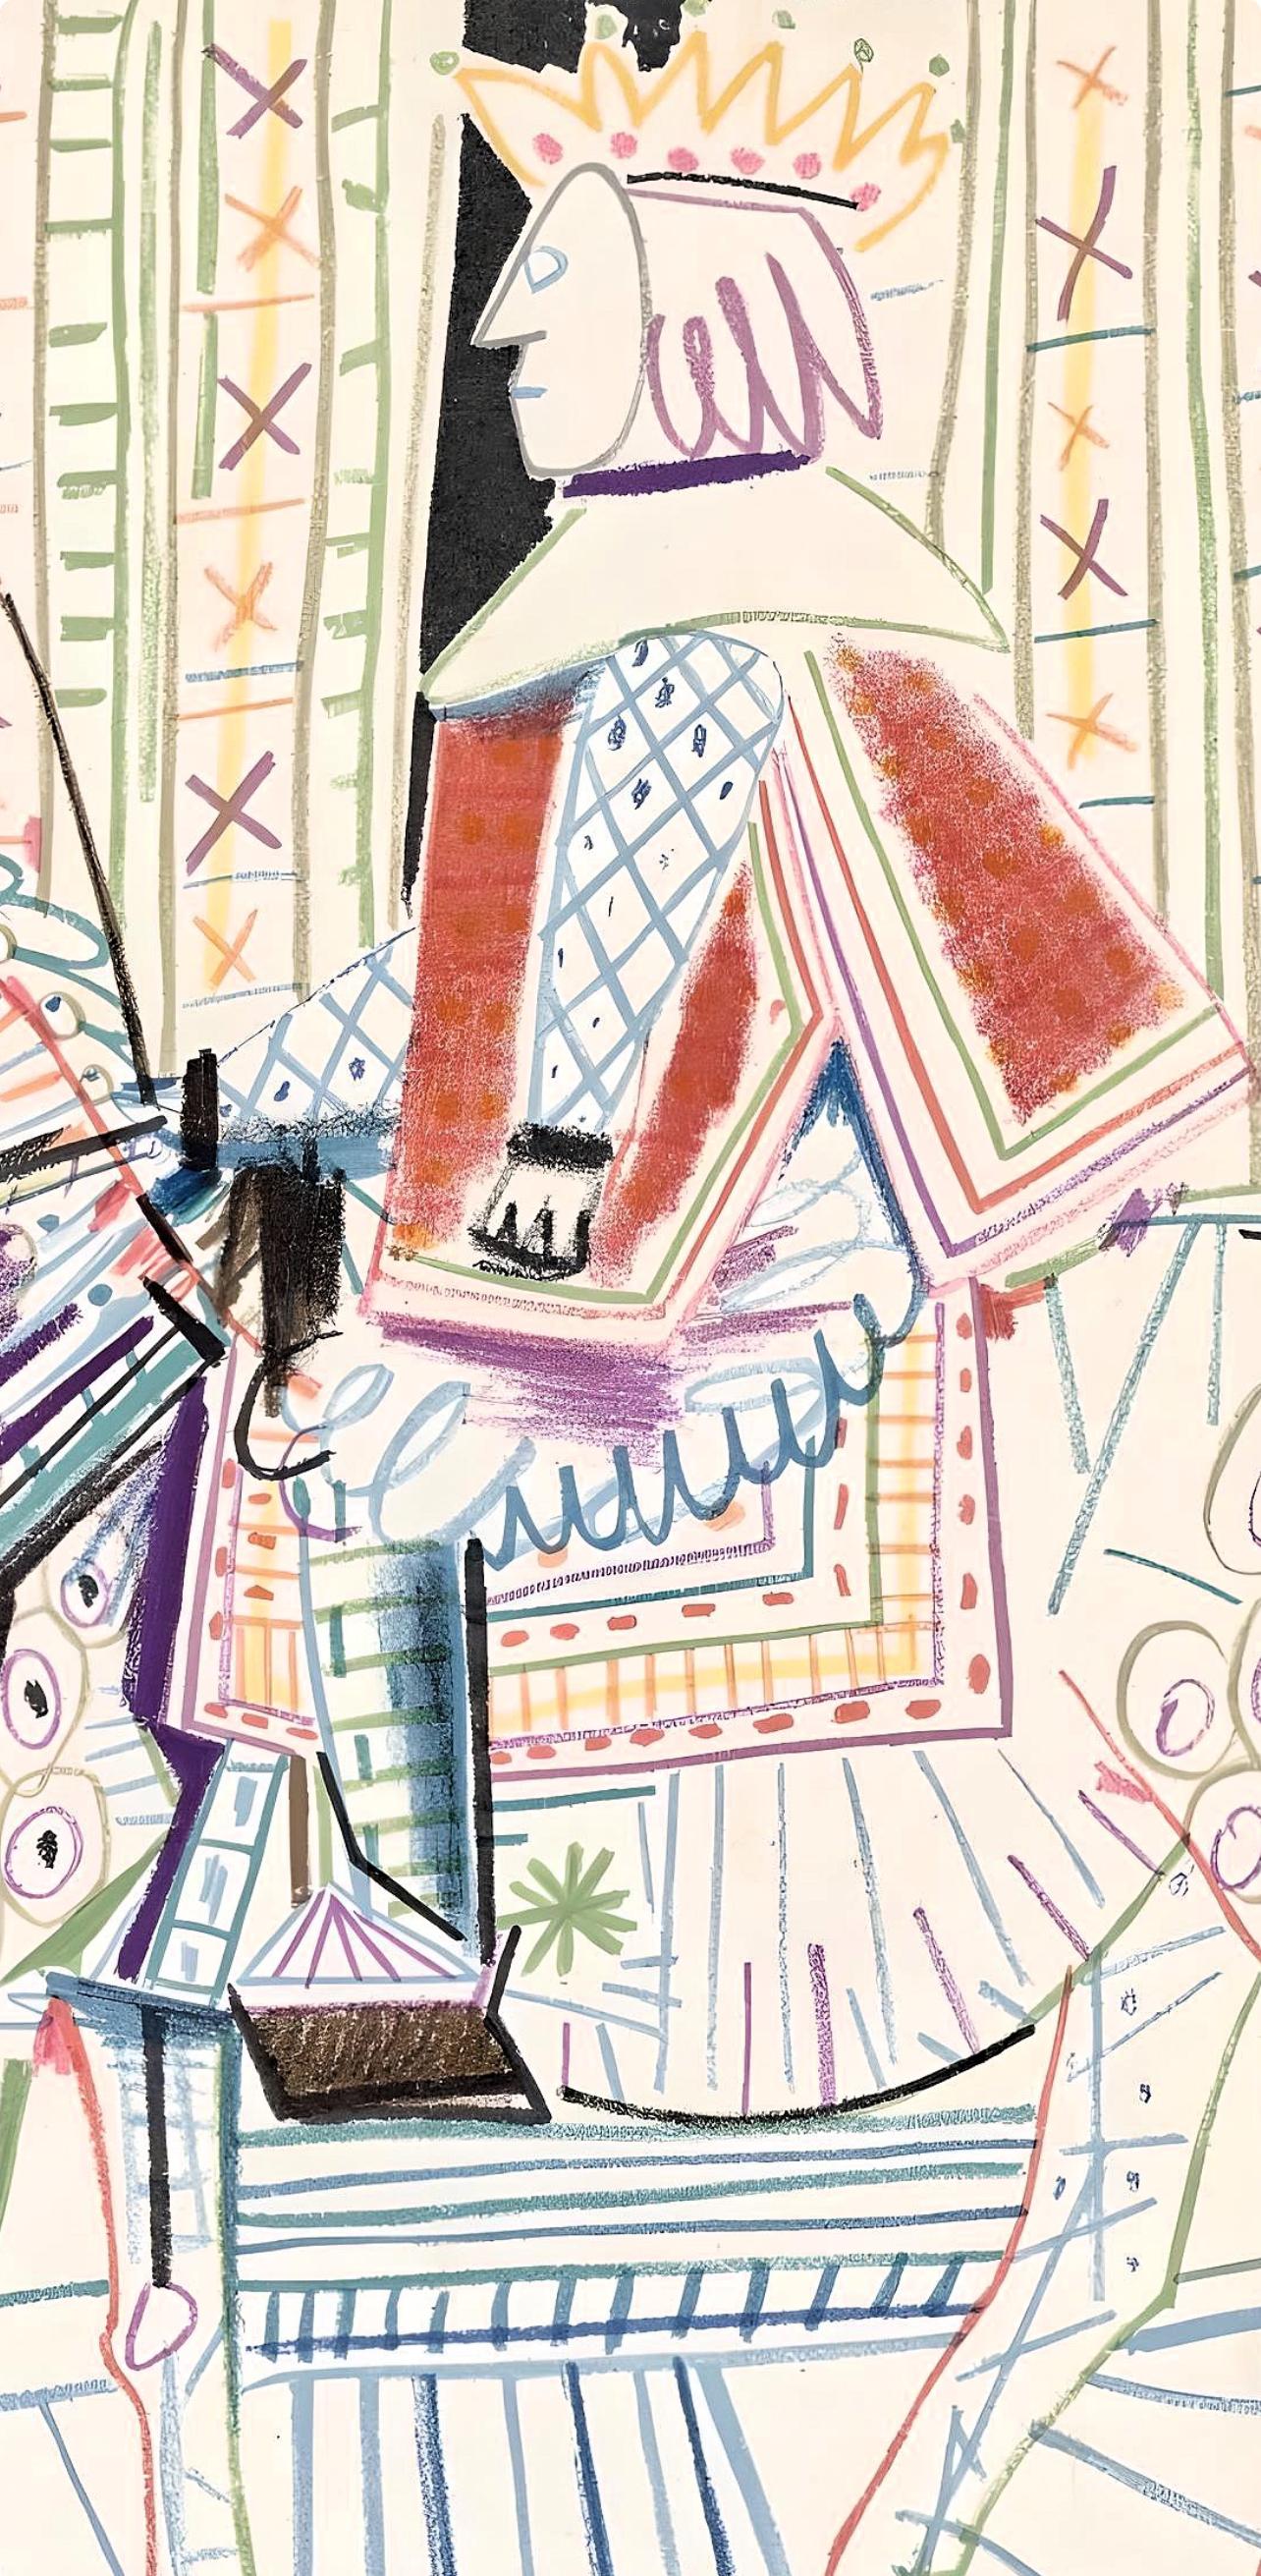 Lithograph on vélin du Marais paper.  Inscription: Unsigned and unnumbered, as issued. Good condition; unframed. Notes: From the volume, Verve: Revue Artistique et Littéraire, N° 29-30, 1954. Published by Éditions de la revue Verve, Paris, under the